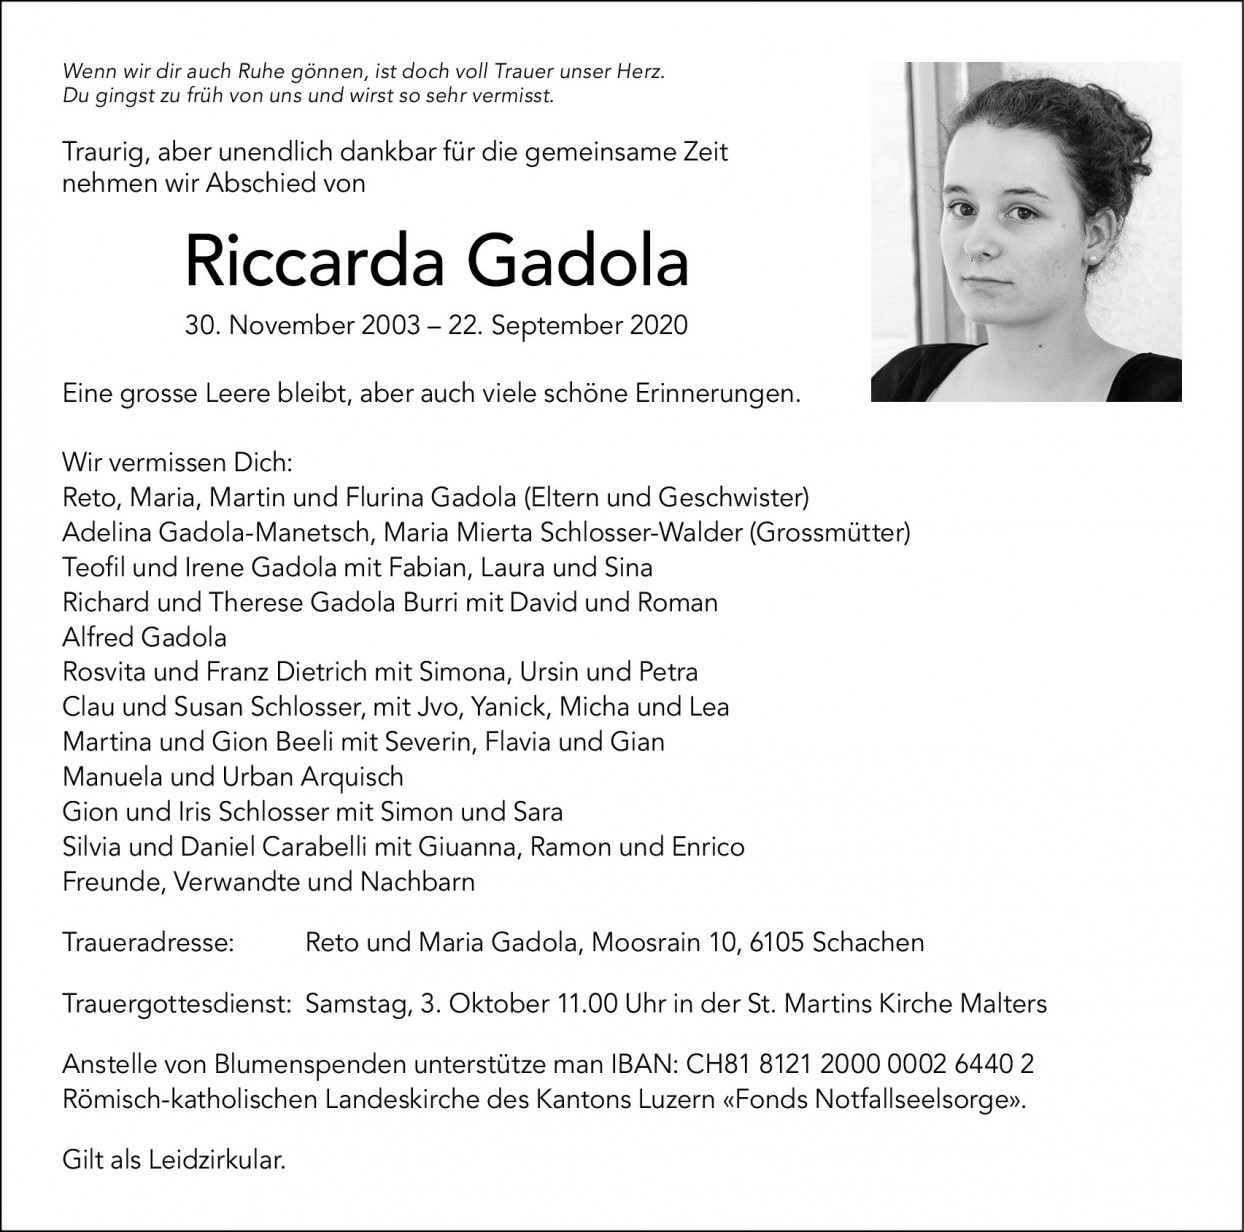 Riccarda Gadola